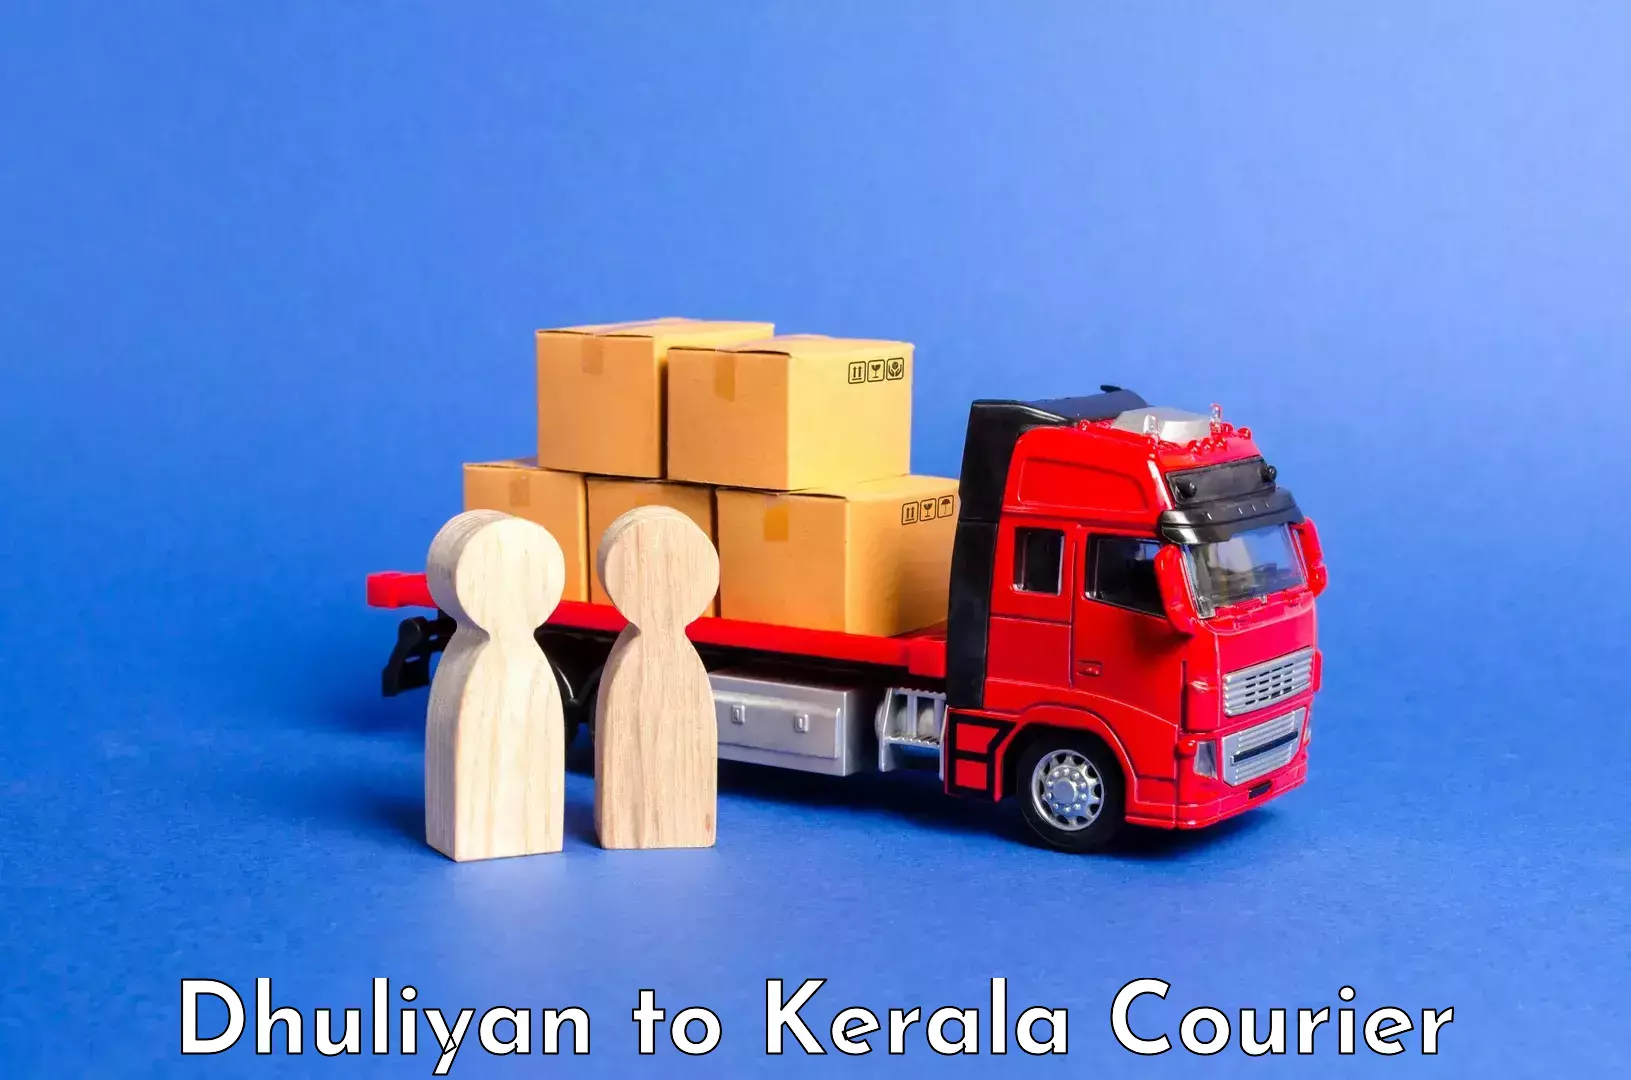 Luggage transport service Dhuliyan to Kerala